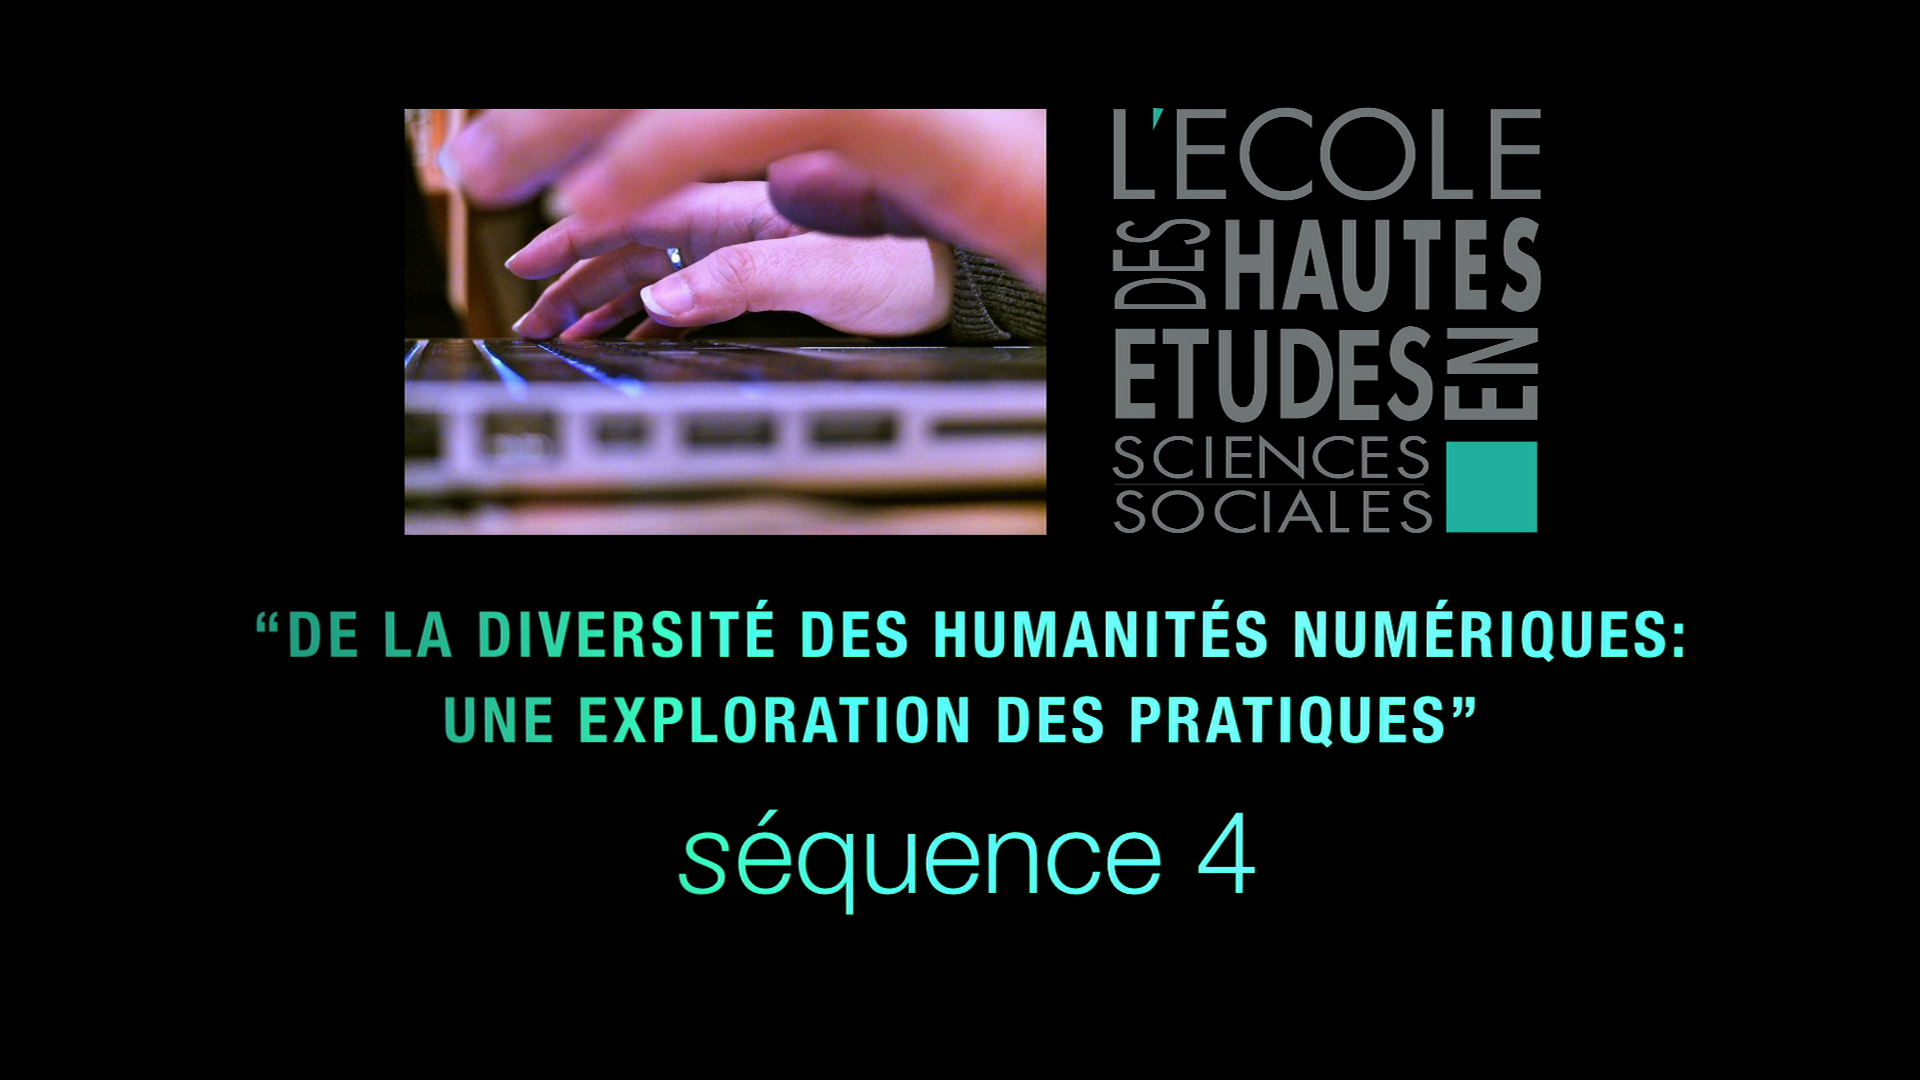 4 - De la diversité des humanités numériques: 
une exploration des pratiques